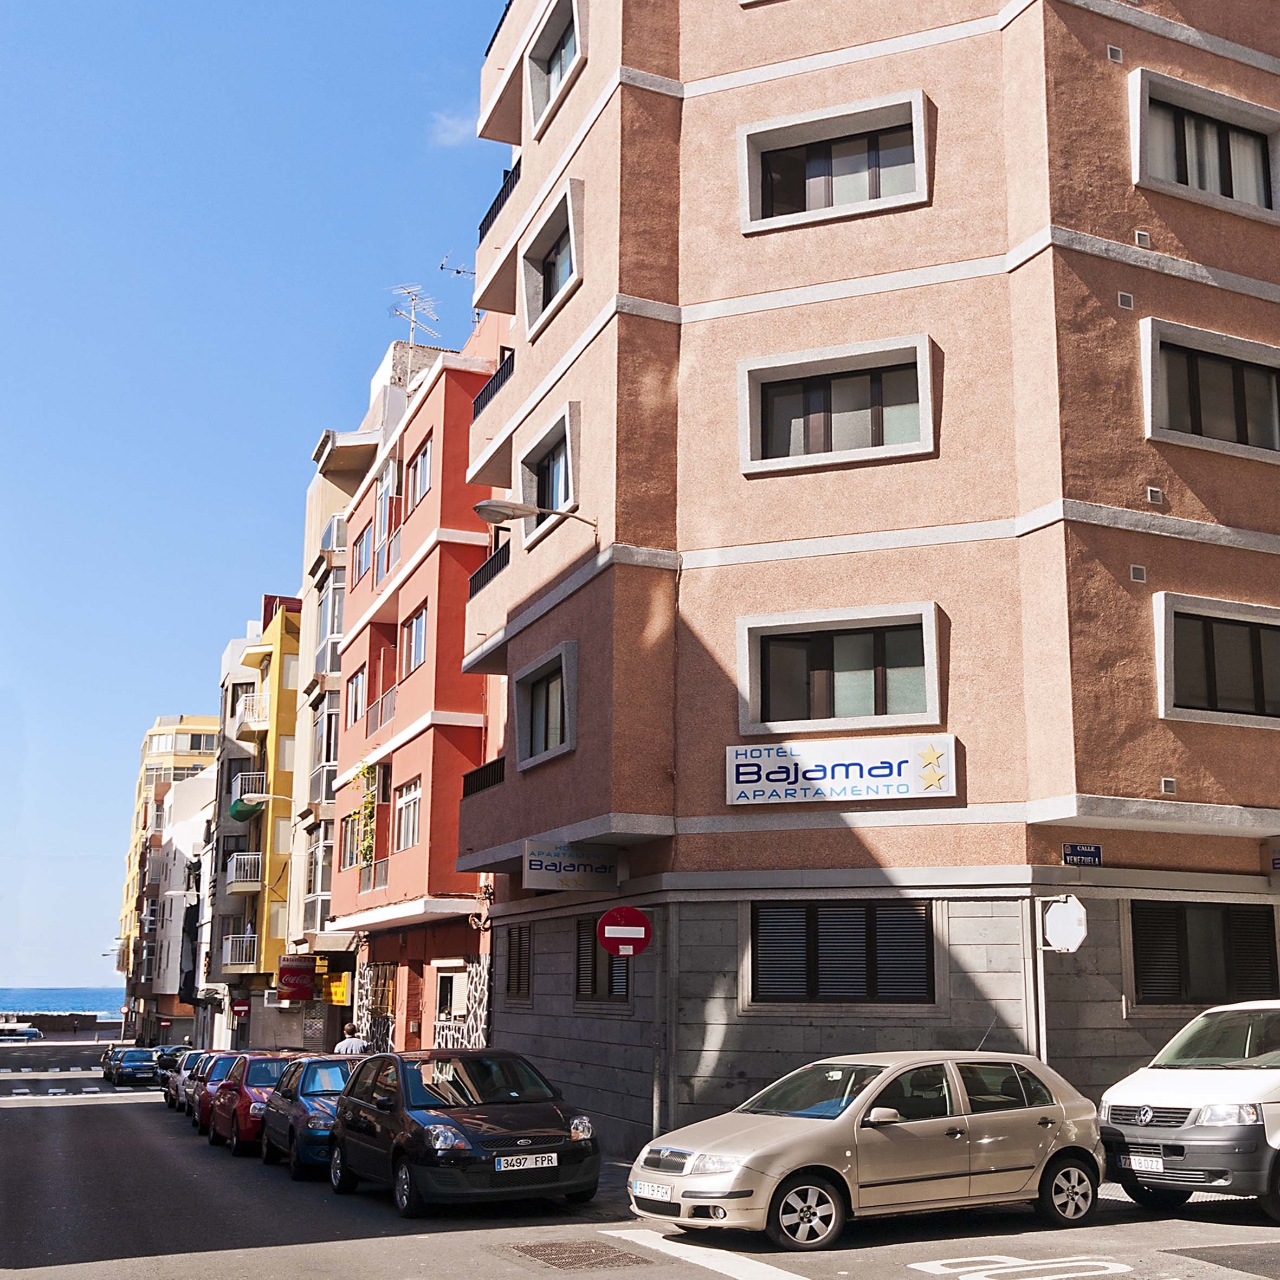 Bajamar Hotel Apartamentos San Bartolomé de Tirajana bei HRS günstig buchen  | HRS